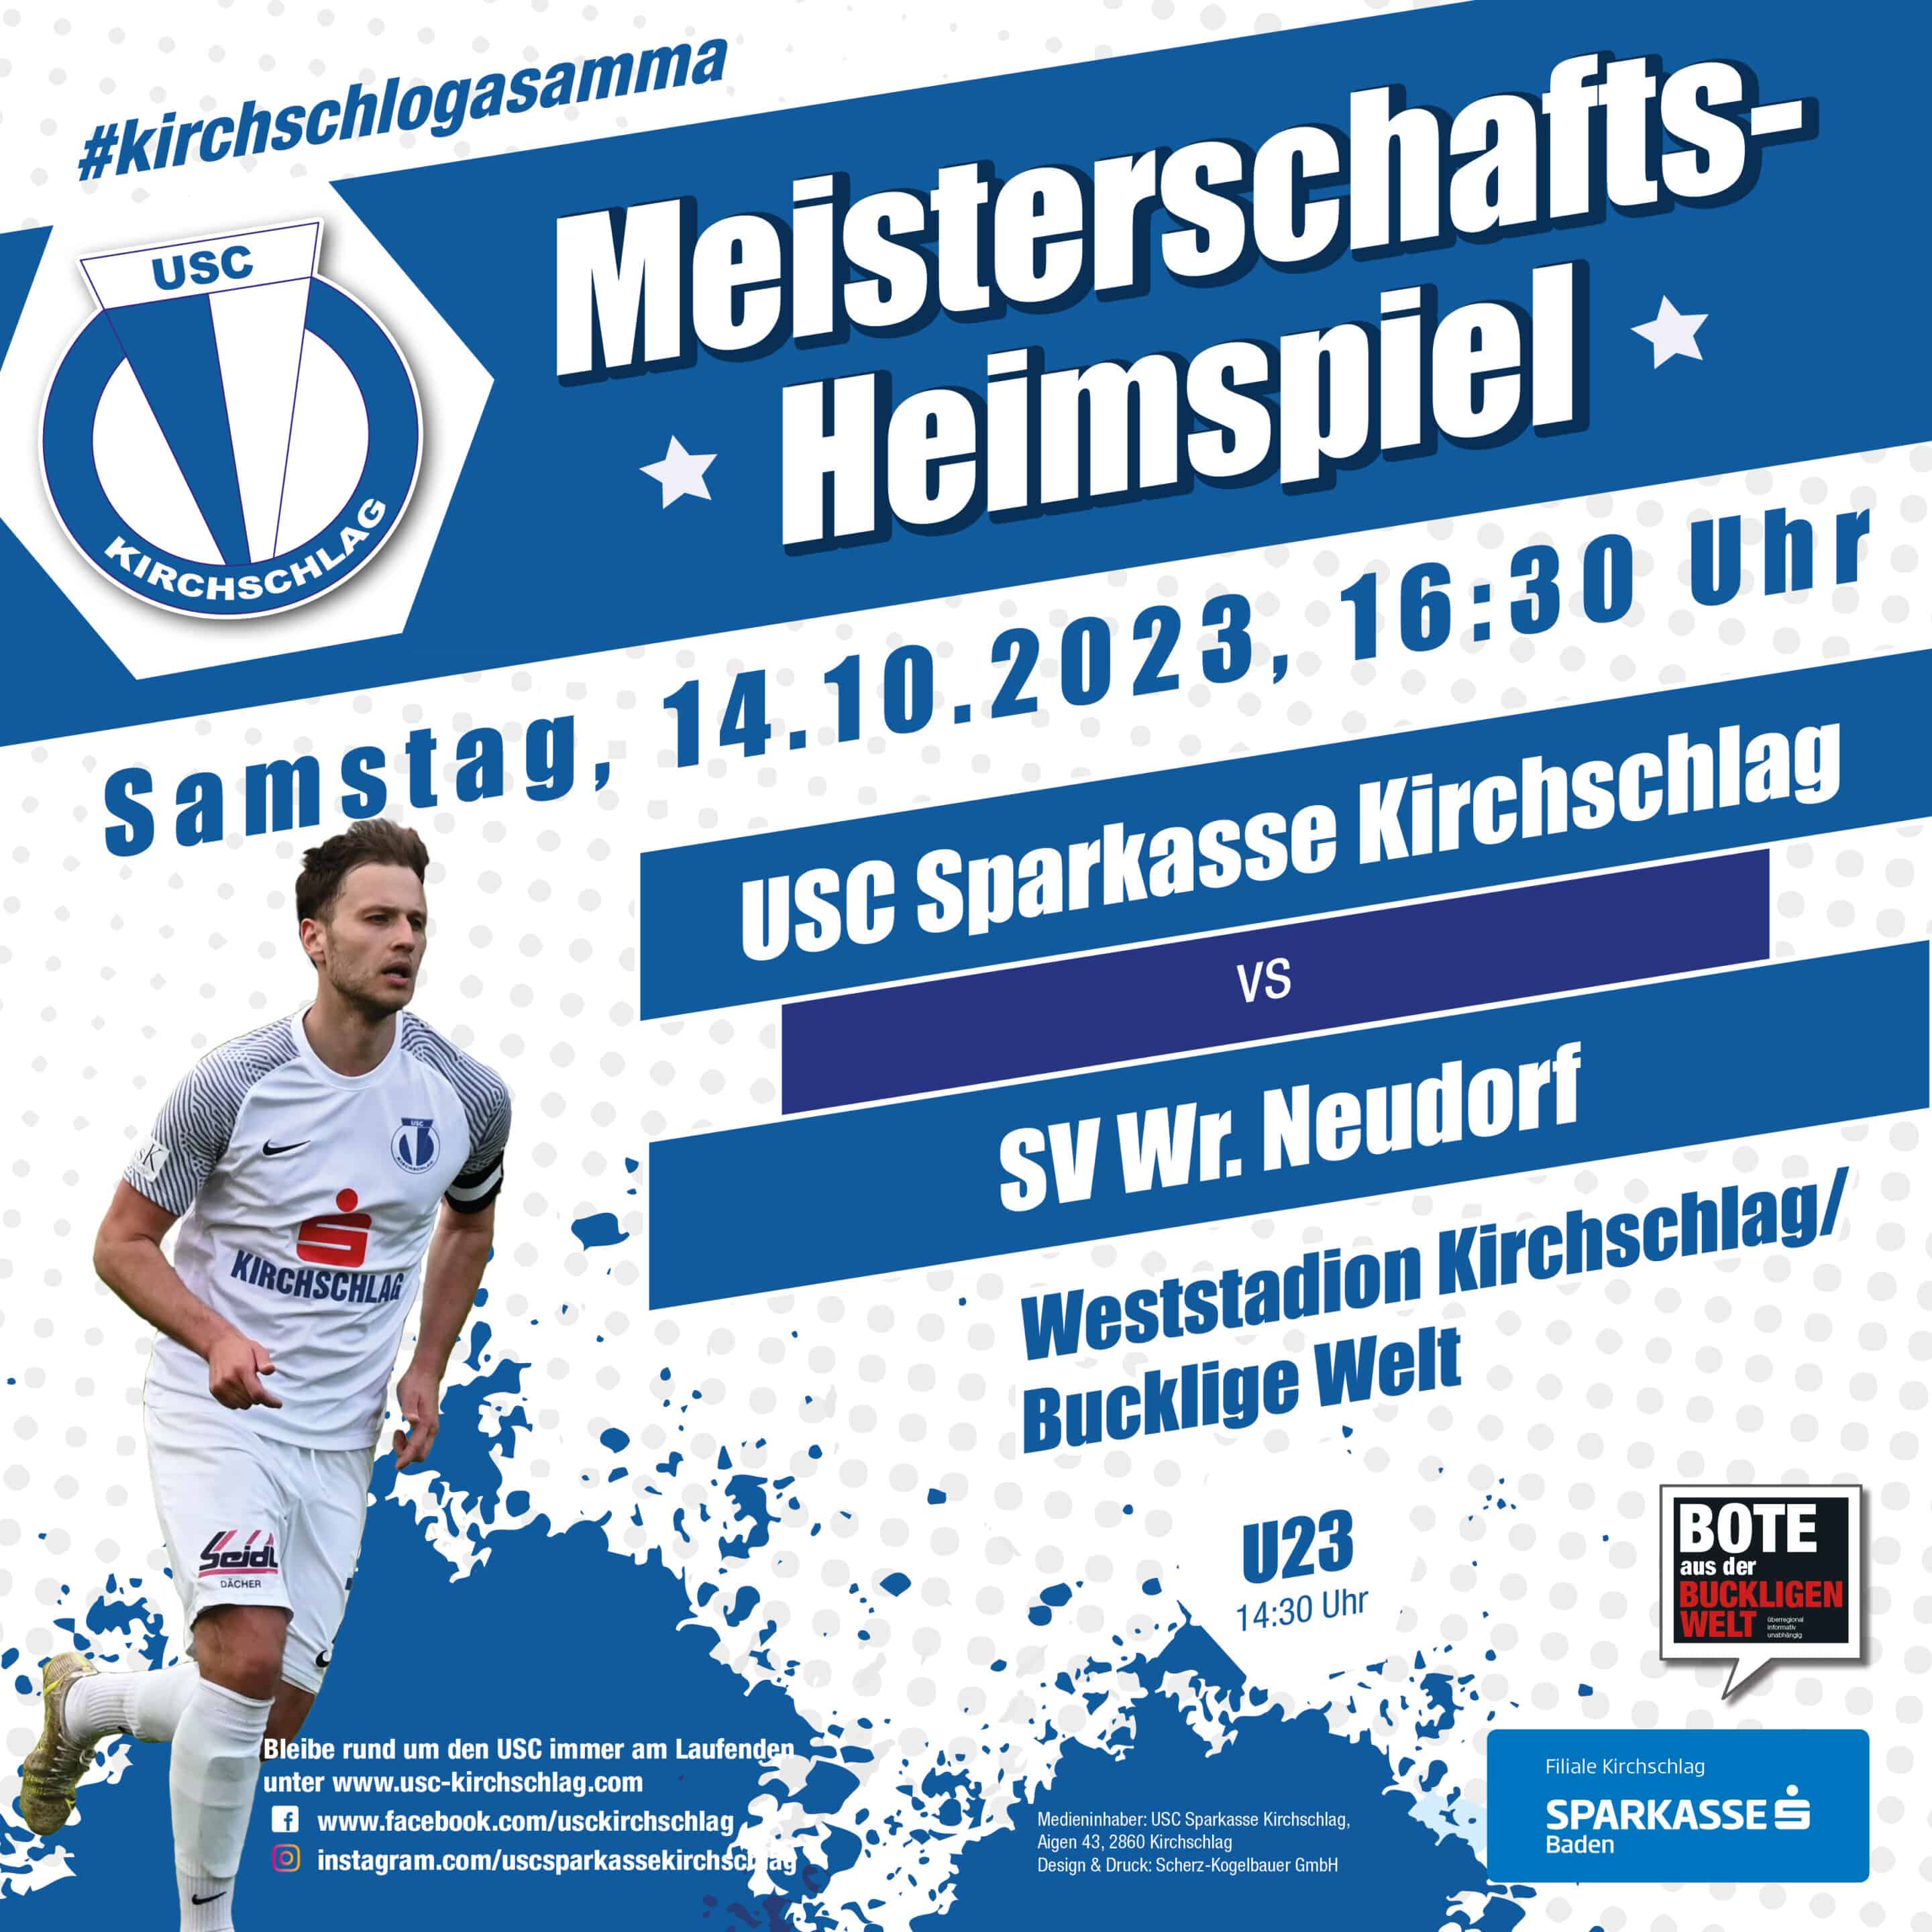 Meisterschaftsheimspiel USC Sparkasse Kirchschlag vs. SV Wr. Neudorf, Samstag 14.10.2023 um 16:30 Uhr